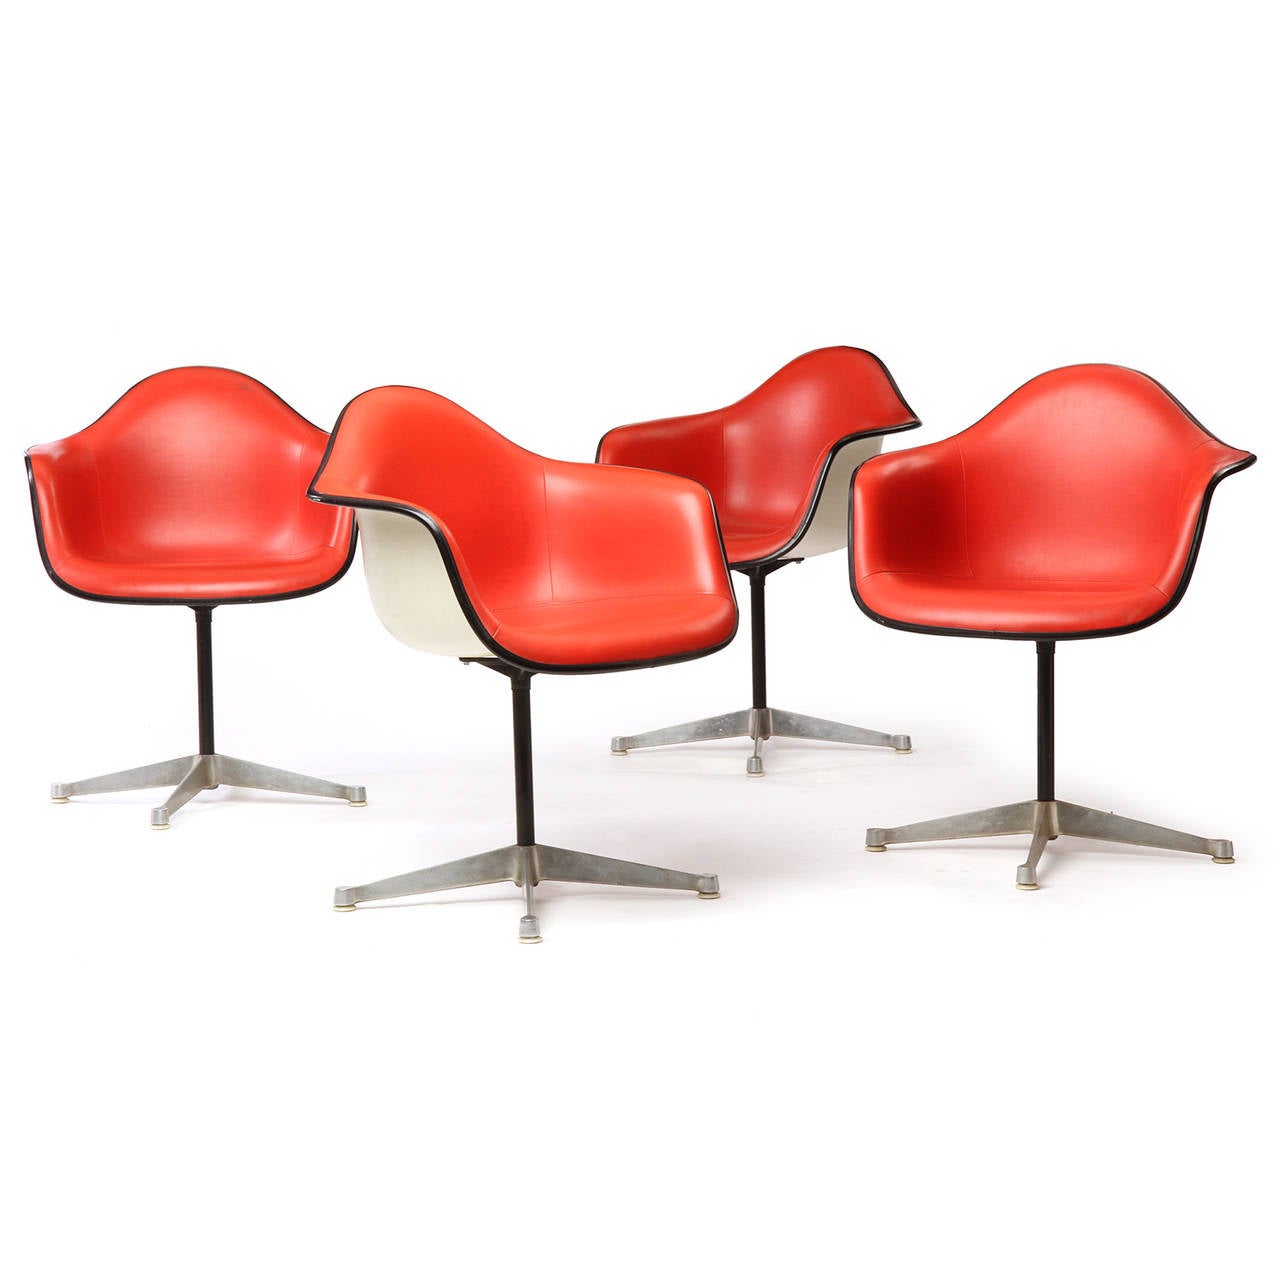 Un groupe vibrant de fauteuils pivotants dont les sièges aux formes organiques, avec leur expressive tapisserie rouge d'origine, flottent sur des tiges laquées s'élevant de bases précoces à quatre branches.